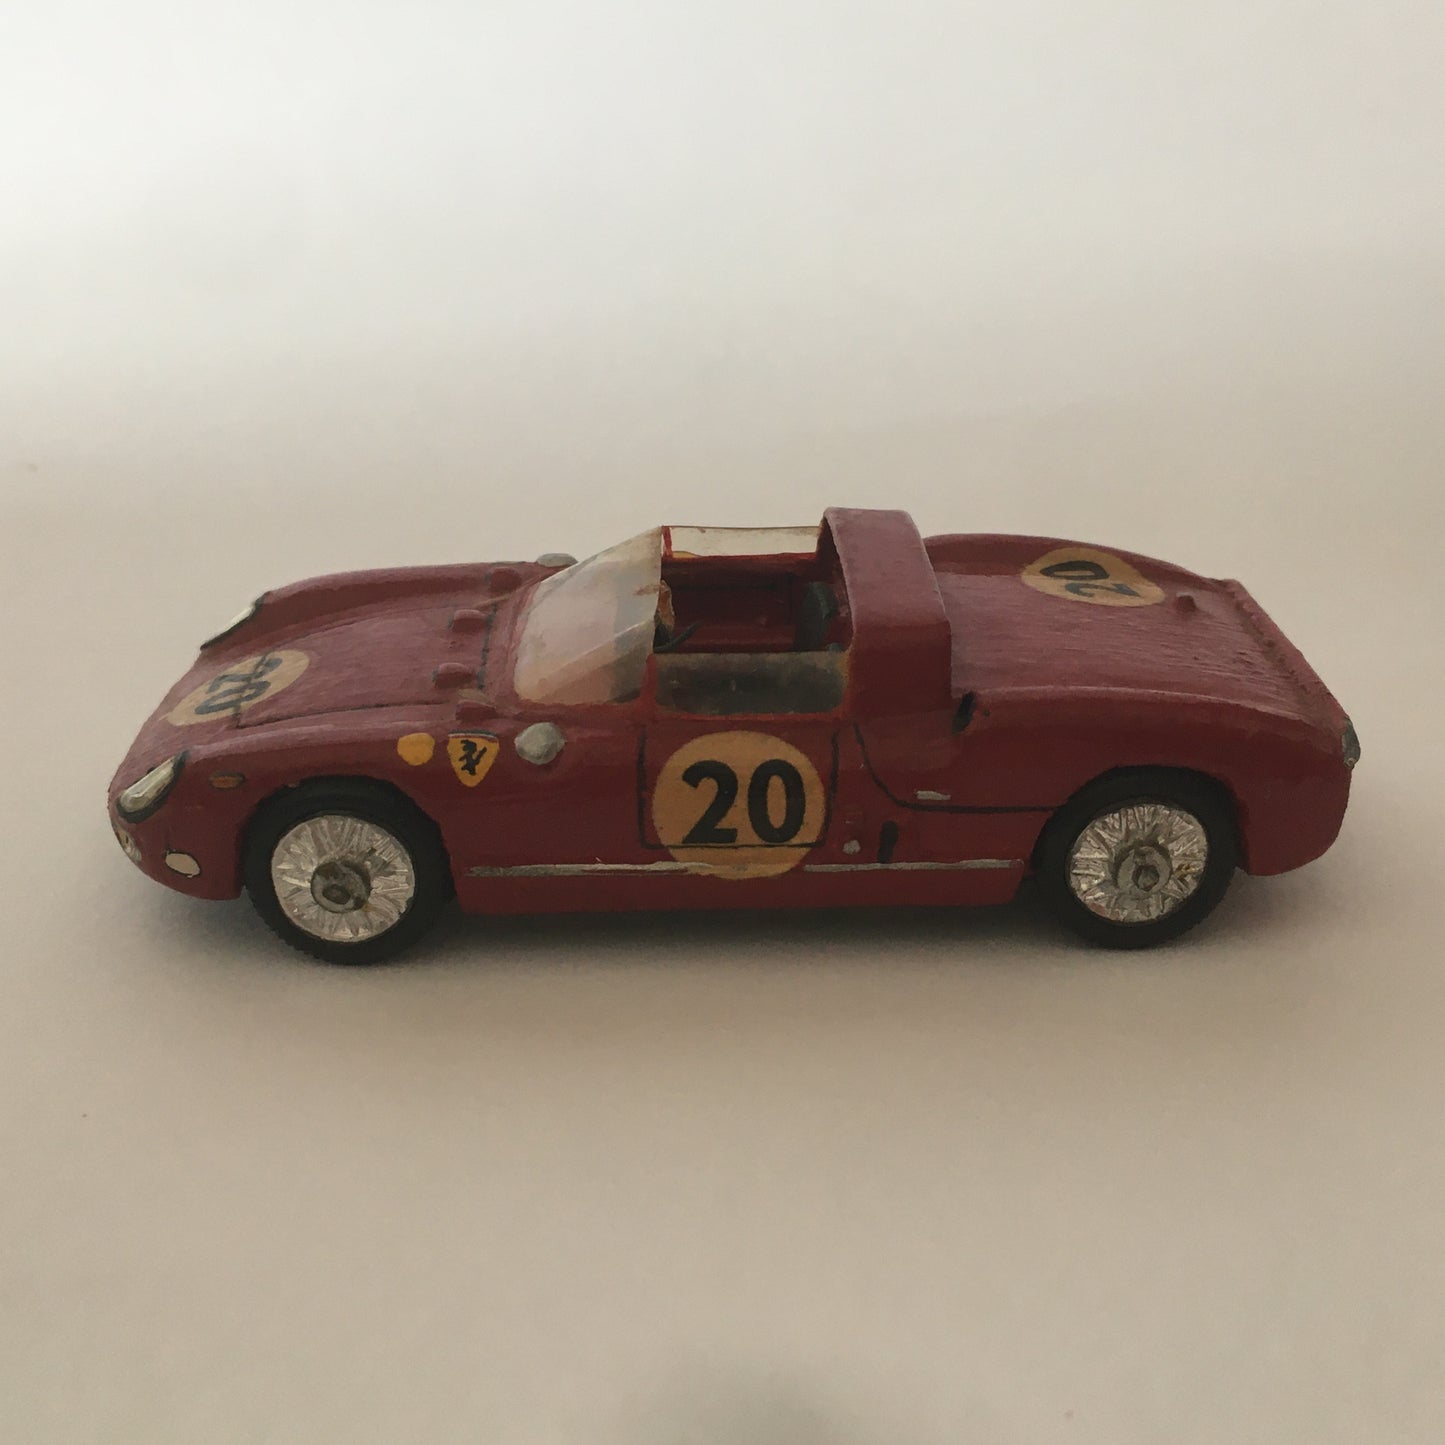 Ferrari, Modellino Artigianale in Legno RD Marmande Ferrari 275 P Numero di Serie 11 Anno 1965 Scala 1:43